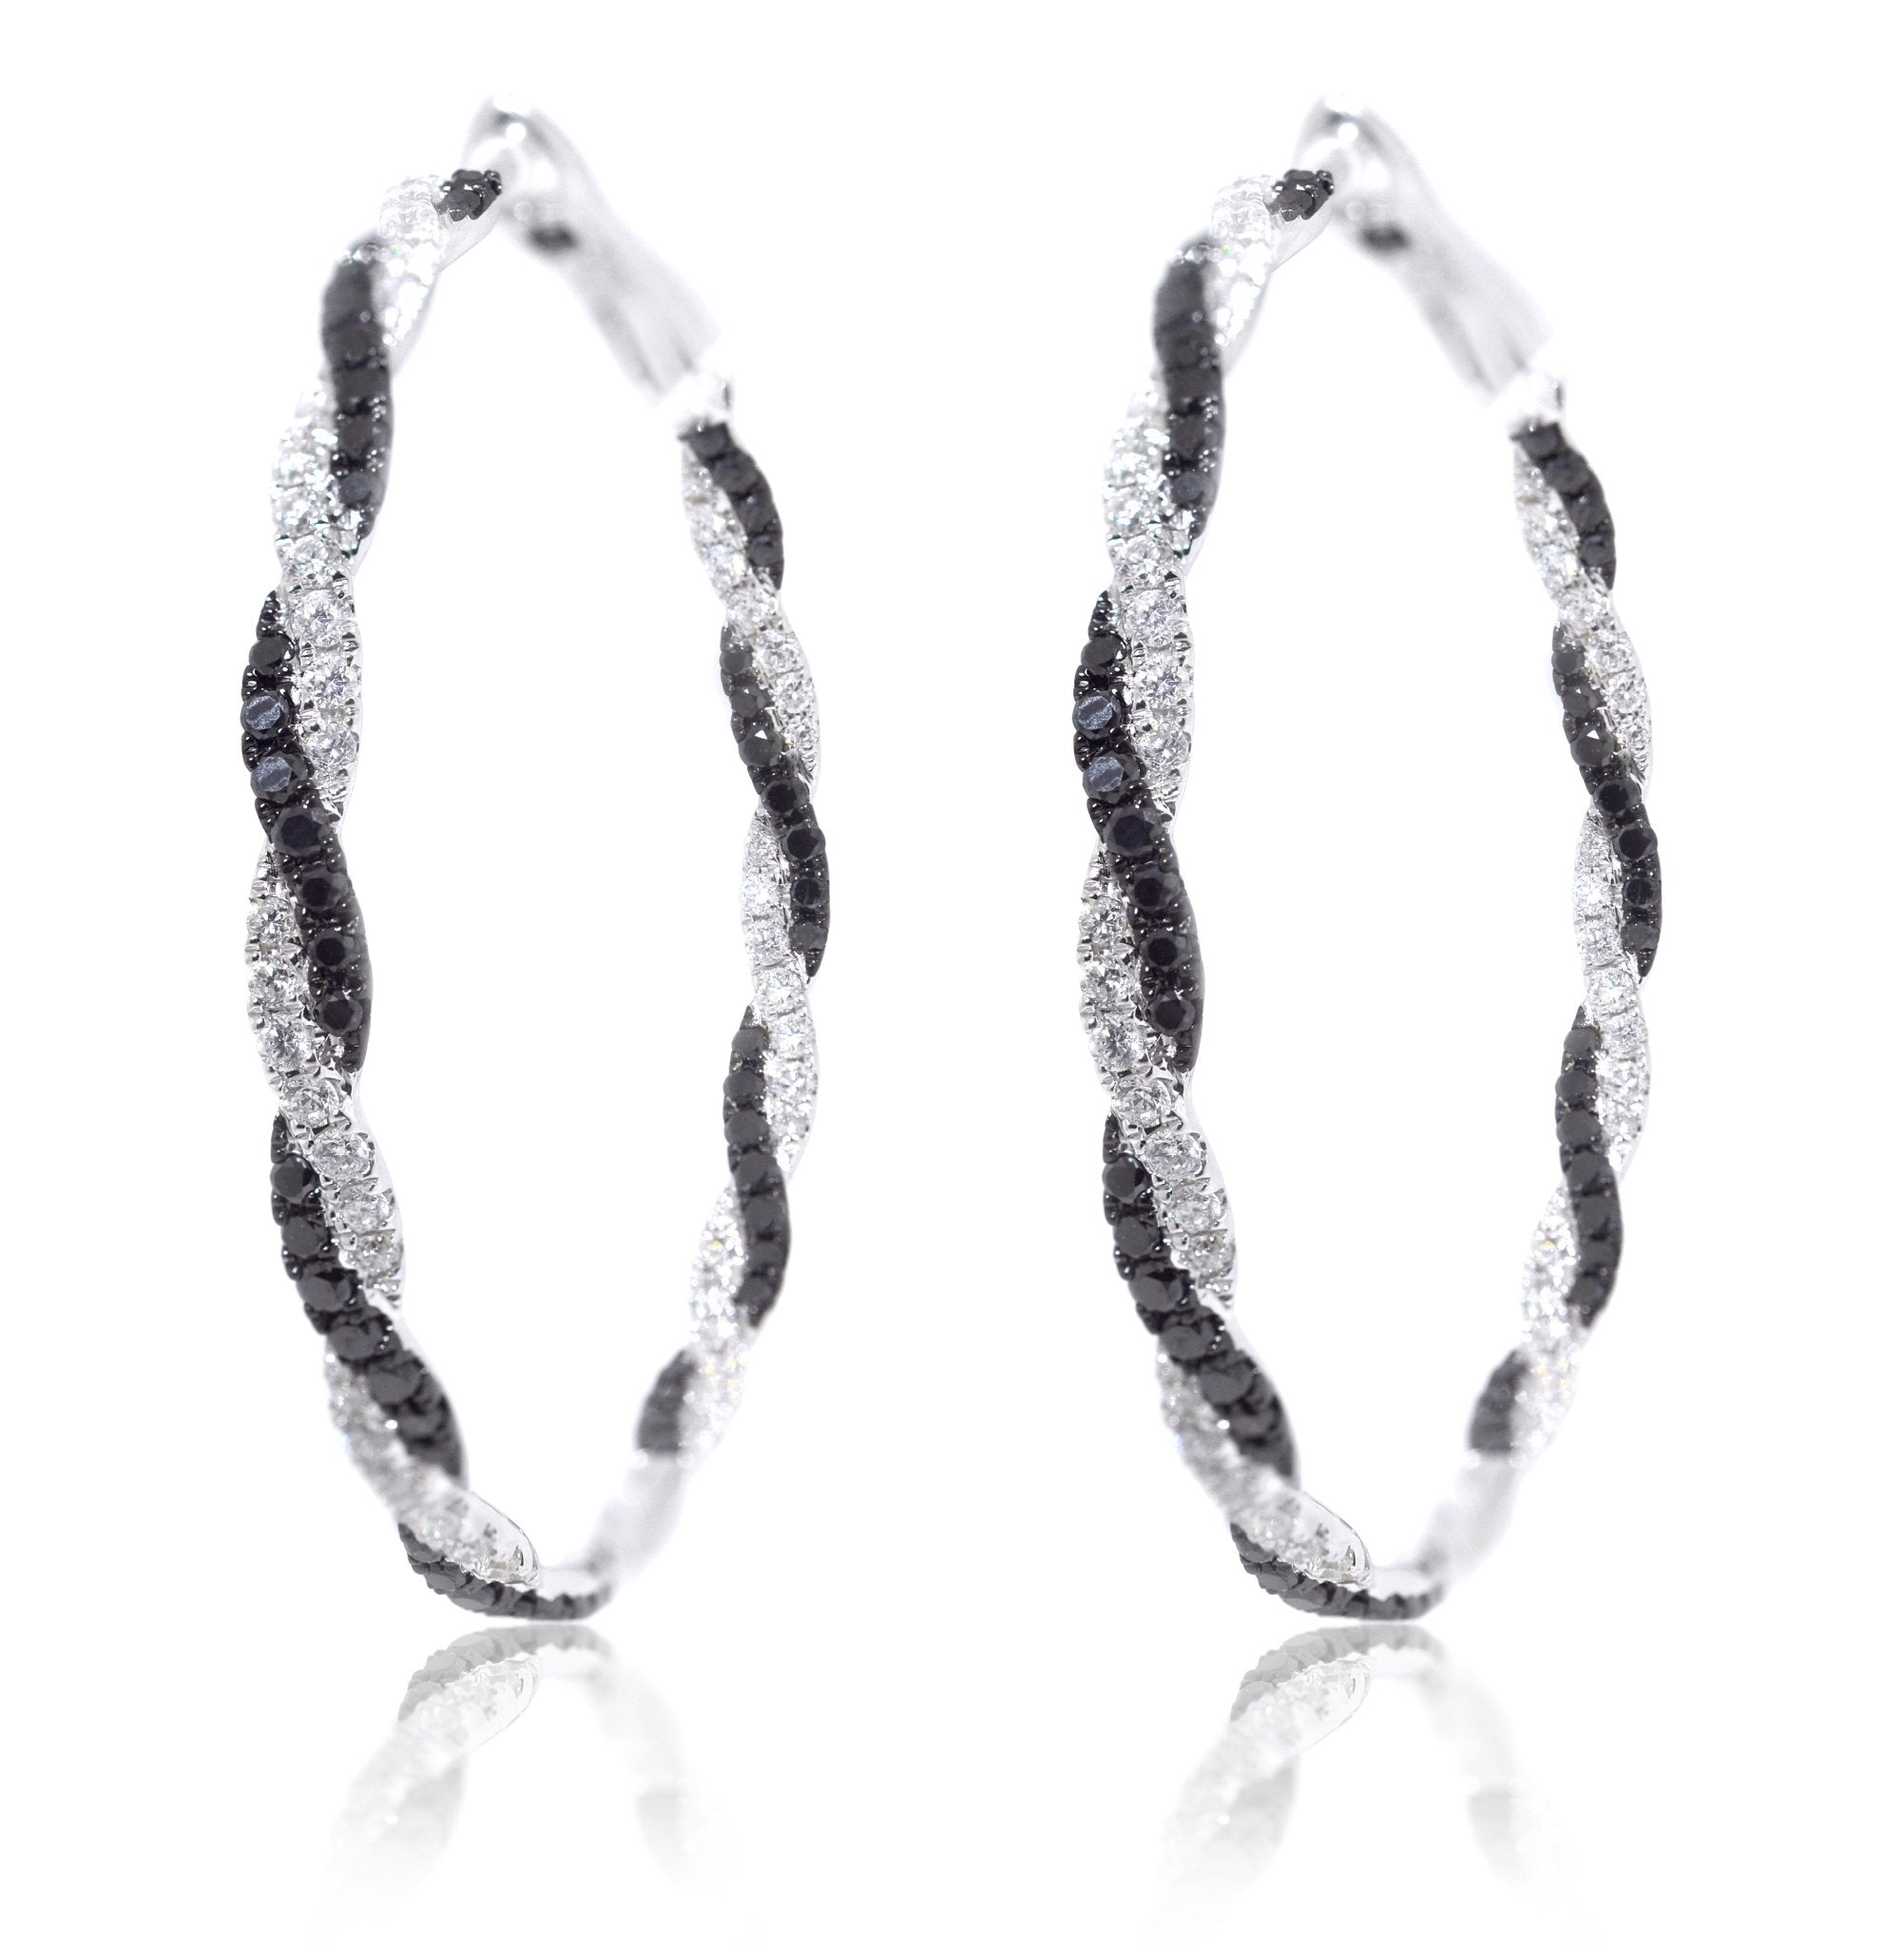 18ct White Gold Black and White Crossover Diamond Earrings - ForeverJewels Design Studio 8